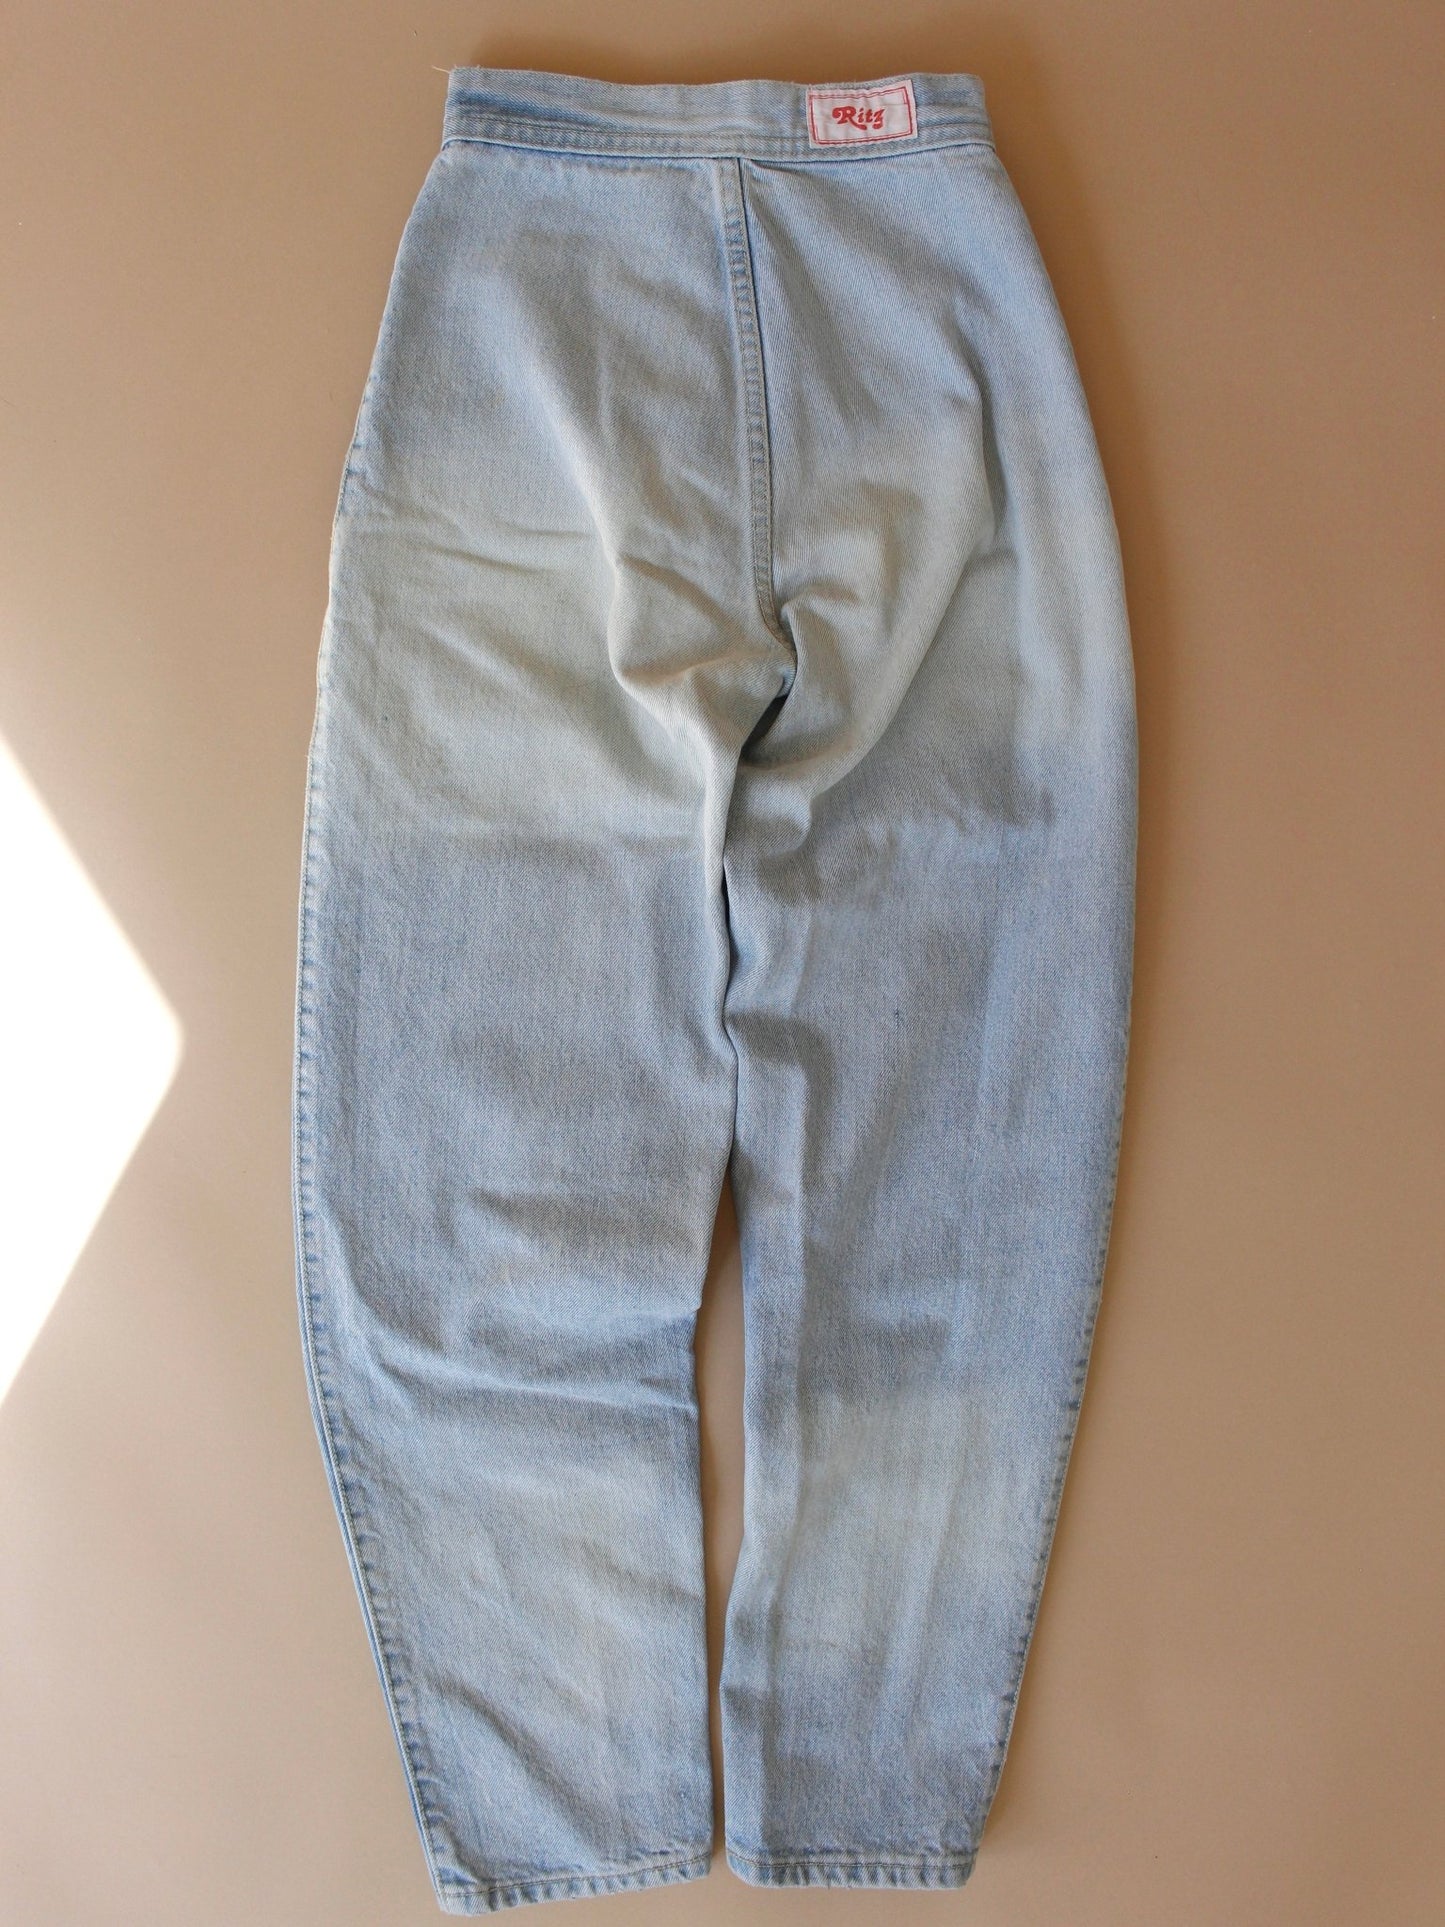 1970s Rit3 Light Wash Jeans